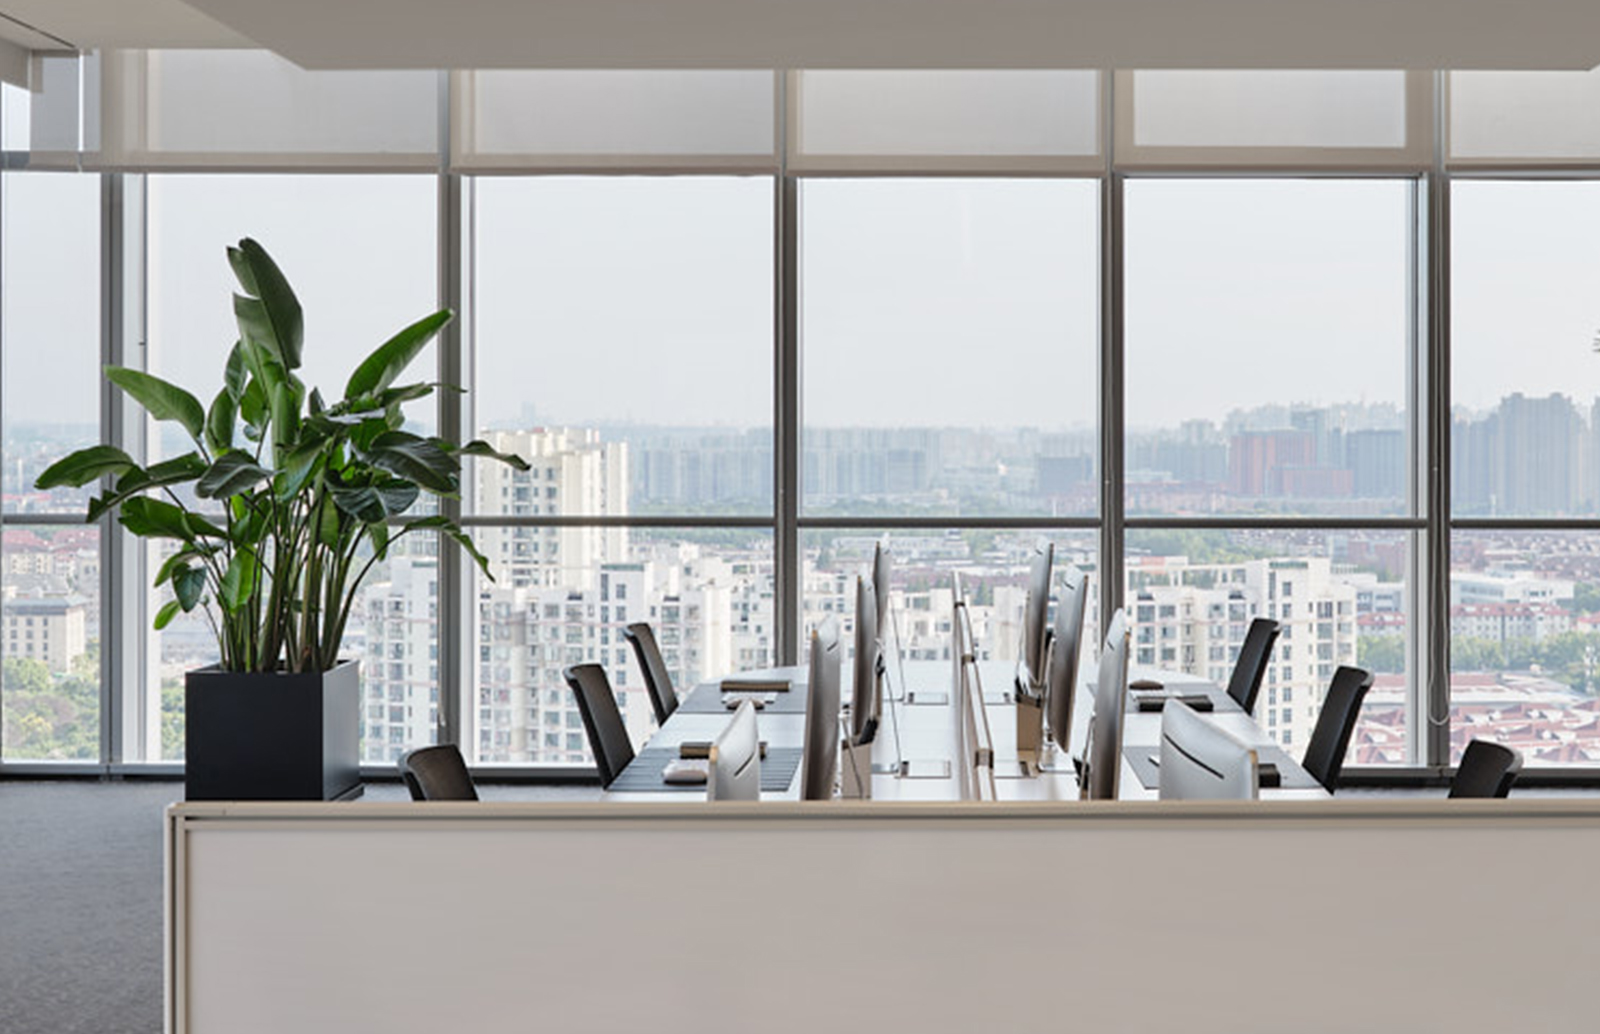 办公室设计,办公楼大堂设计,办公室样板间设计,现代风格办公室设计,办公室设计案例,上海力波中心,上海,于强室内设计师事务所,于强,YuQiang&Partners